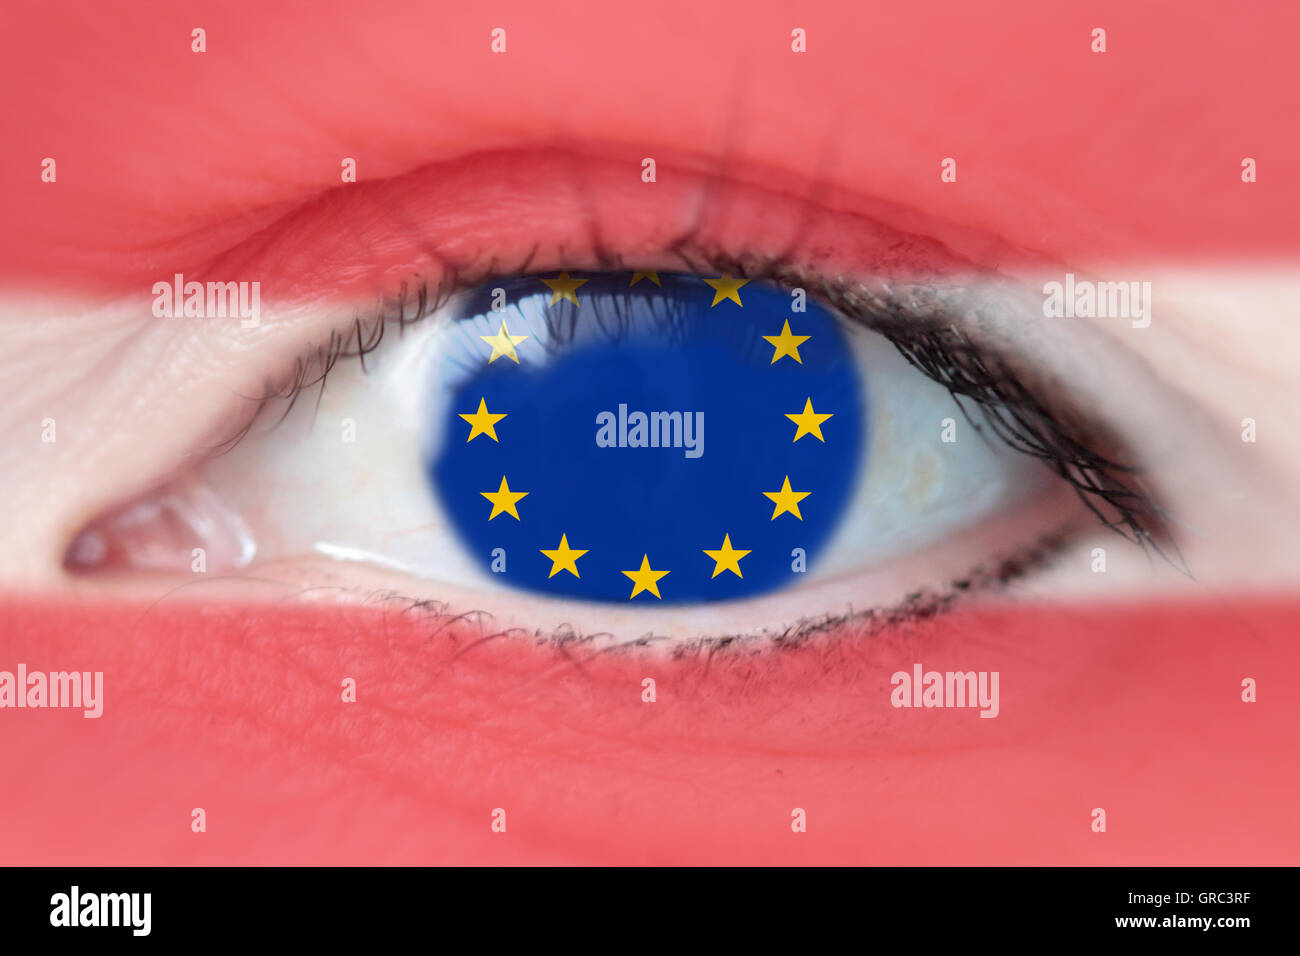 Österreichische Flagge und EU-Europäische Union Flagge mit einer Frau S Auge Stockfoto